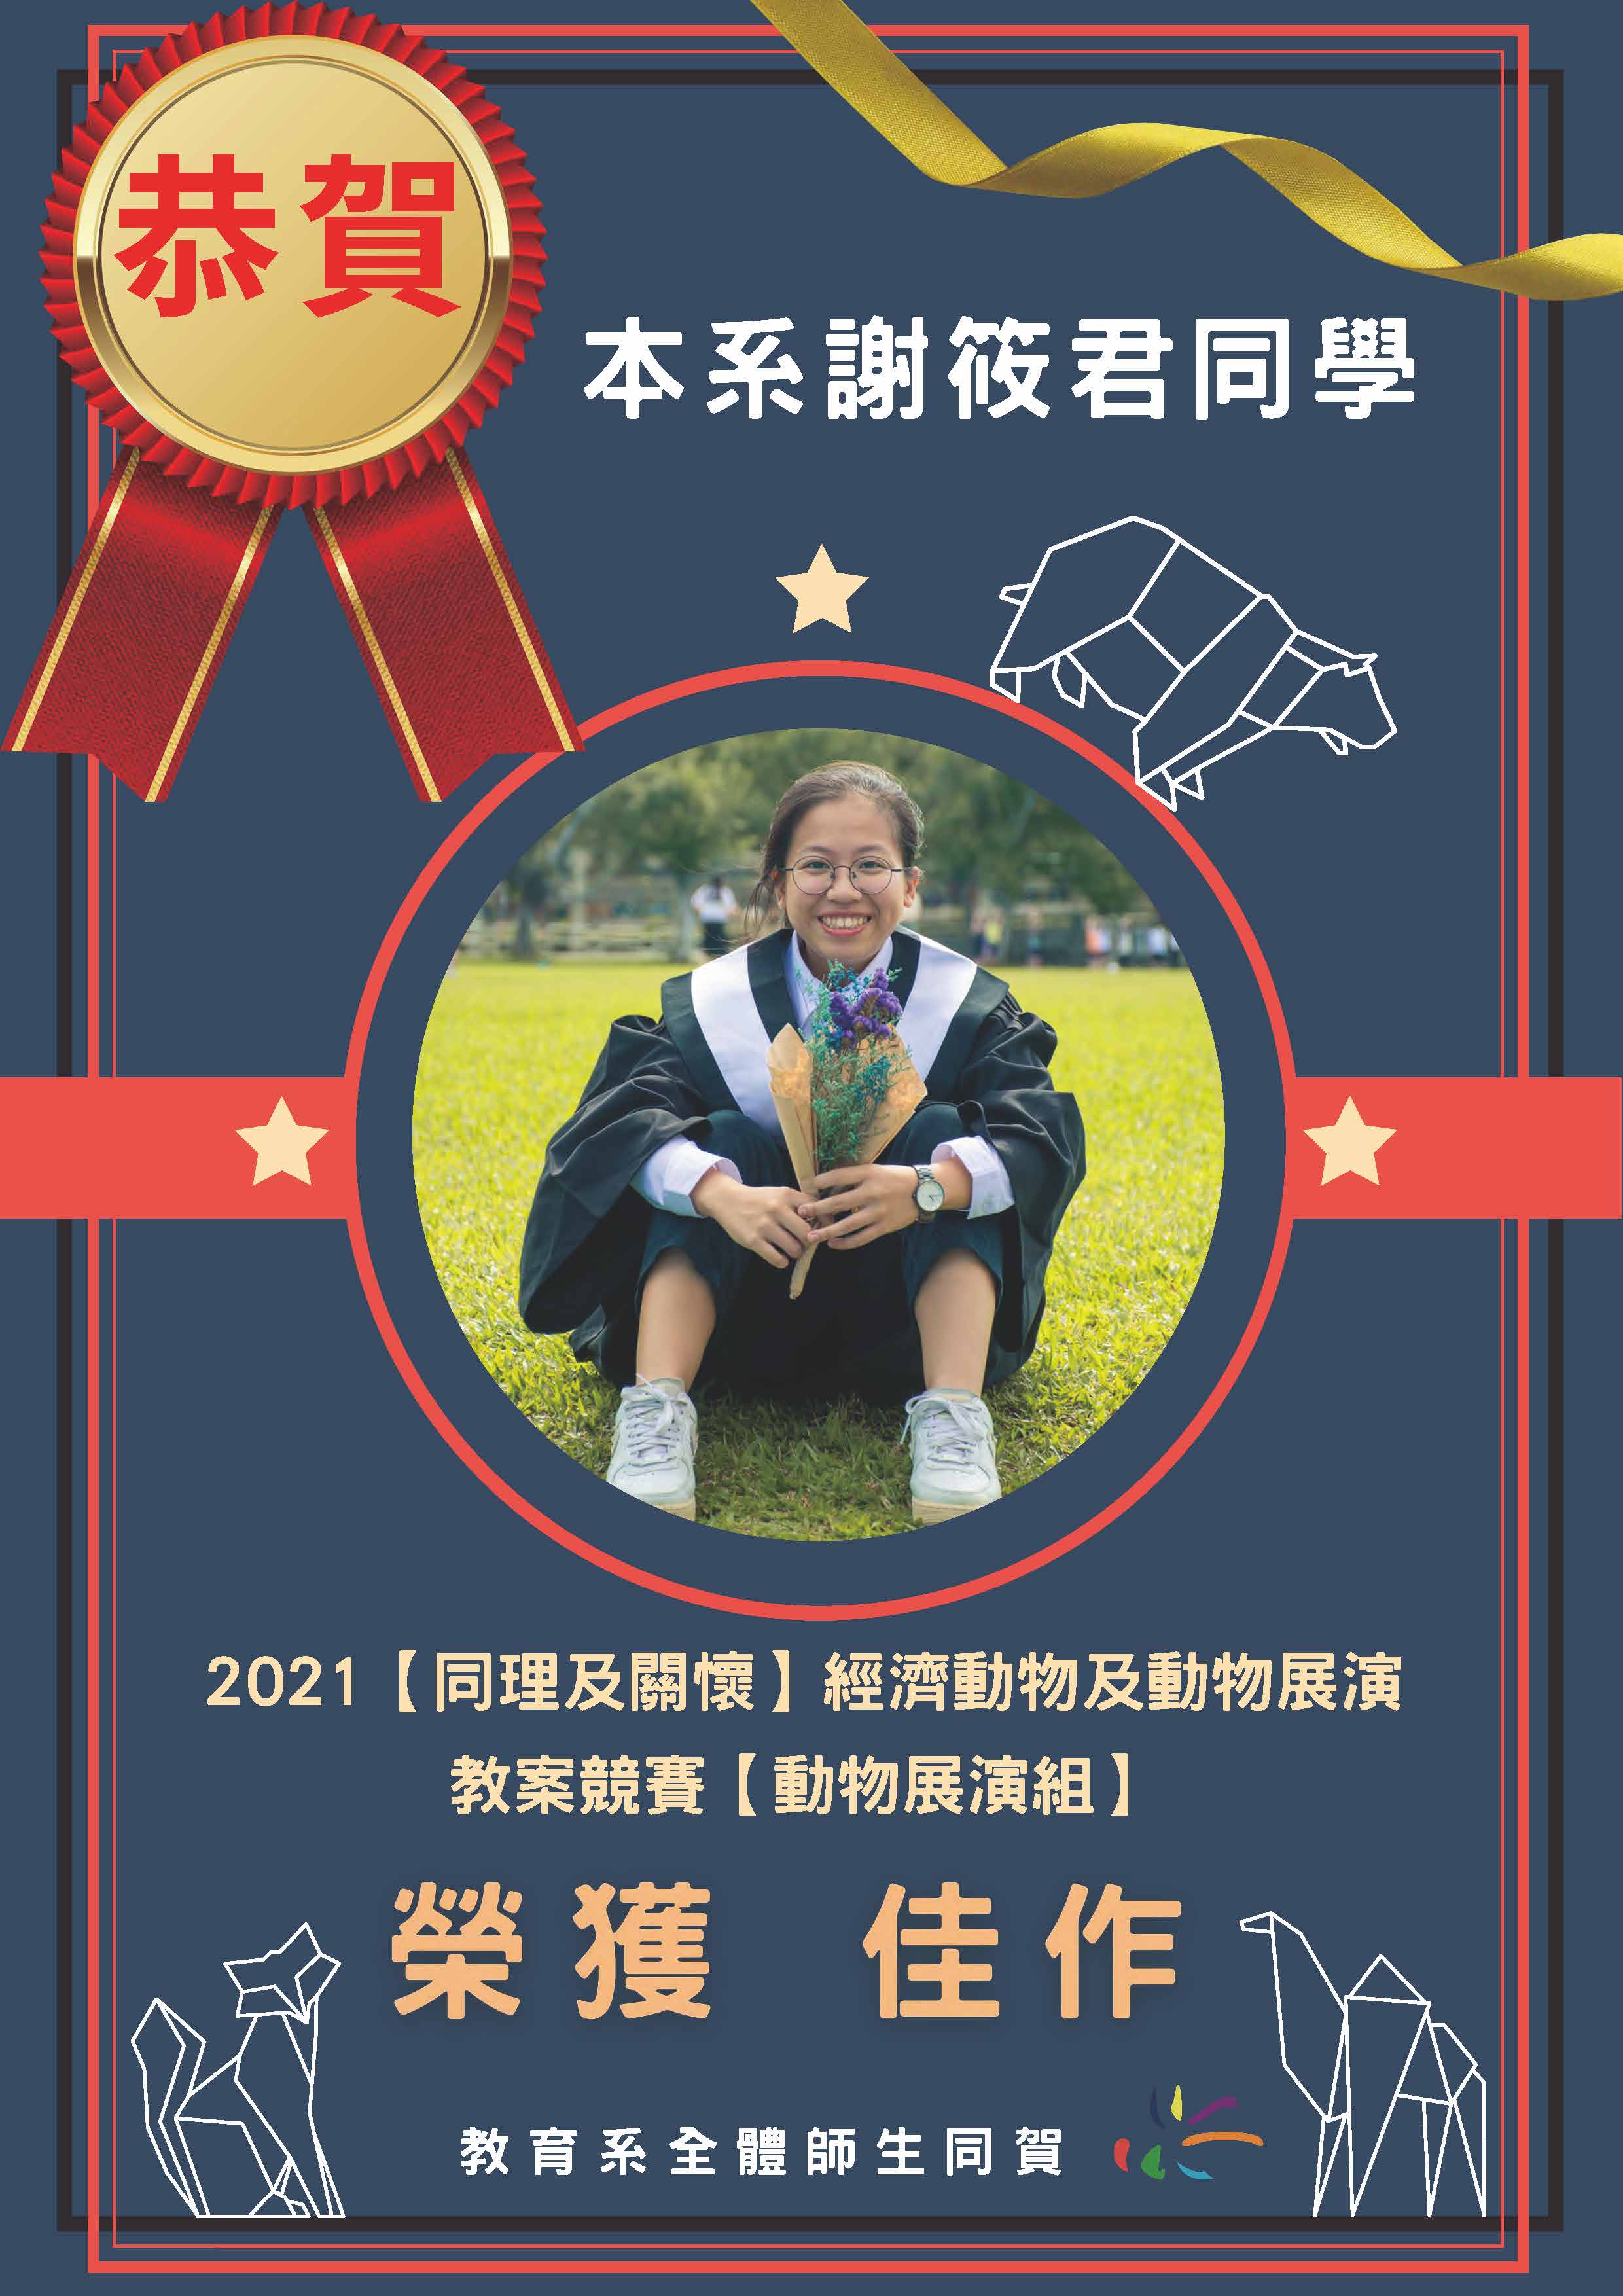 恭賀！本系大學部 謝筱君同學 榮獲2021 教案競賽 佳作